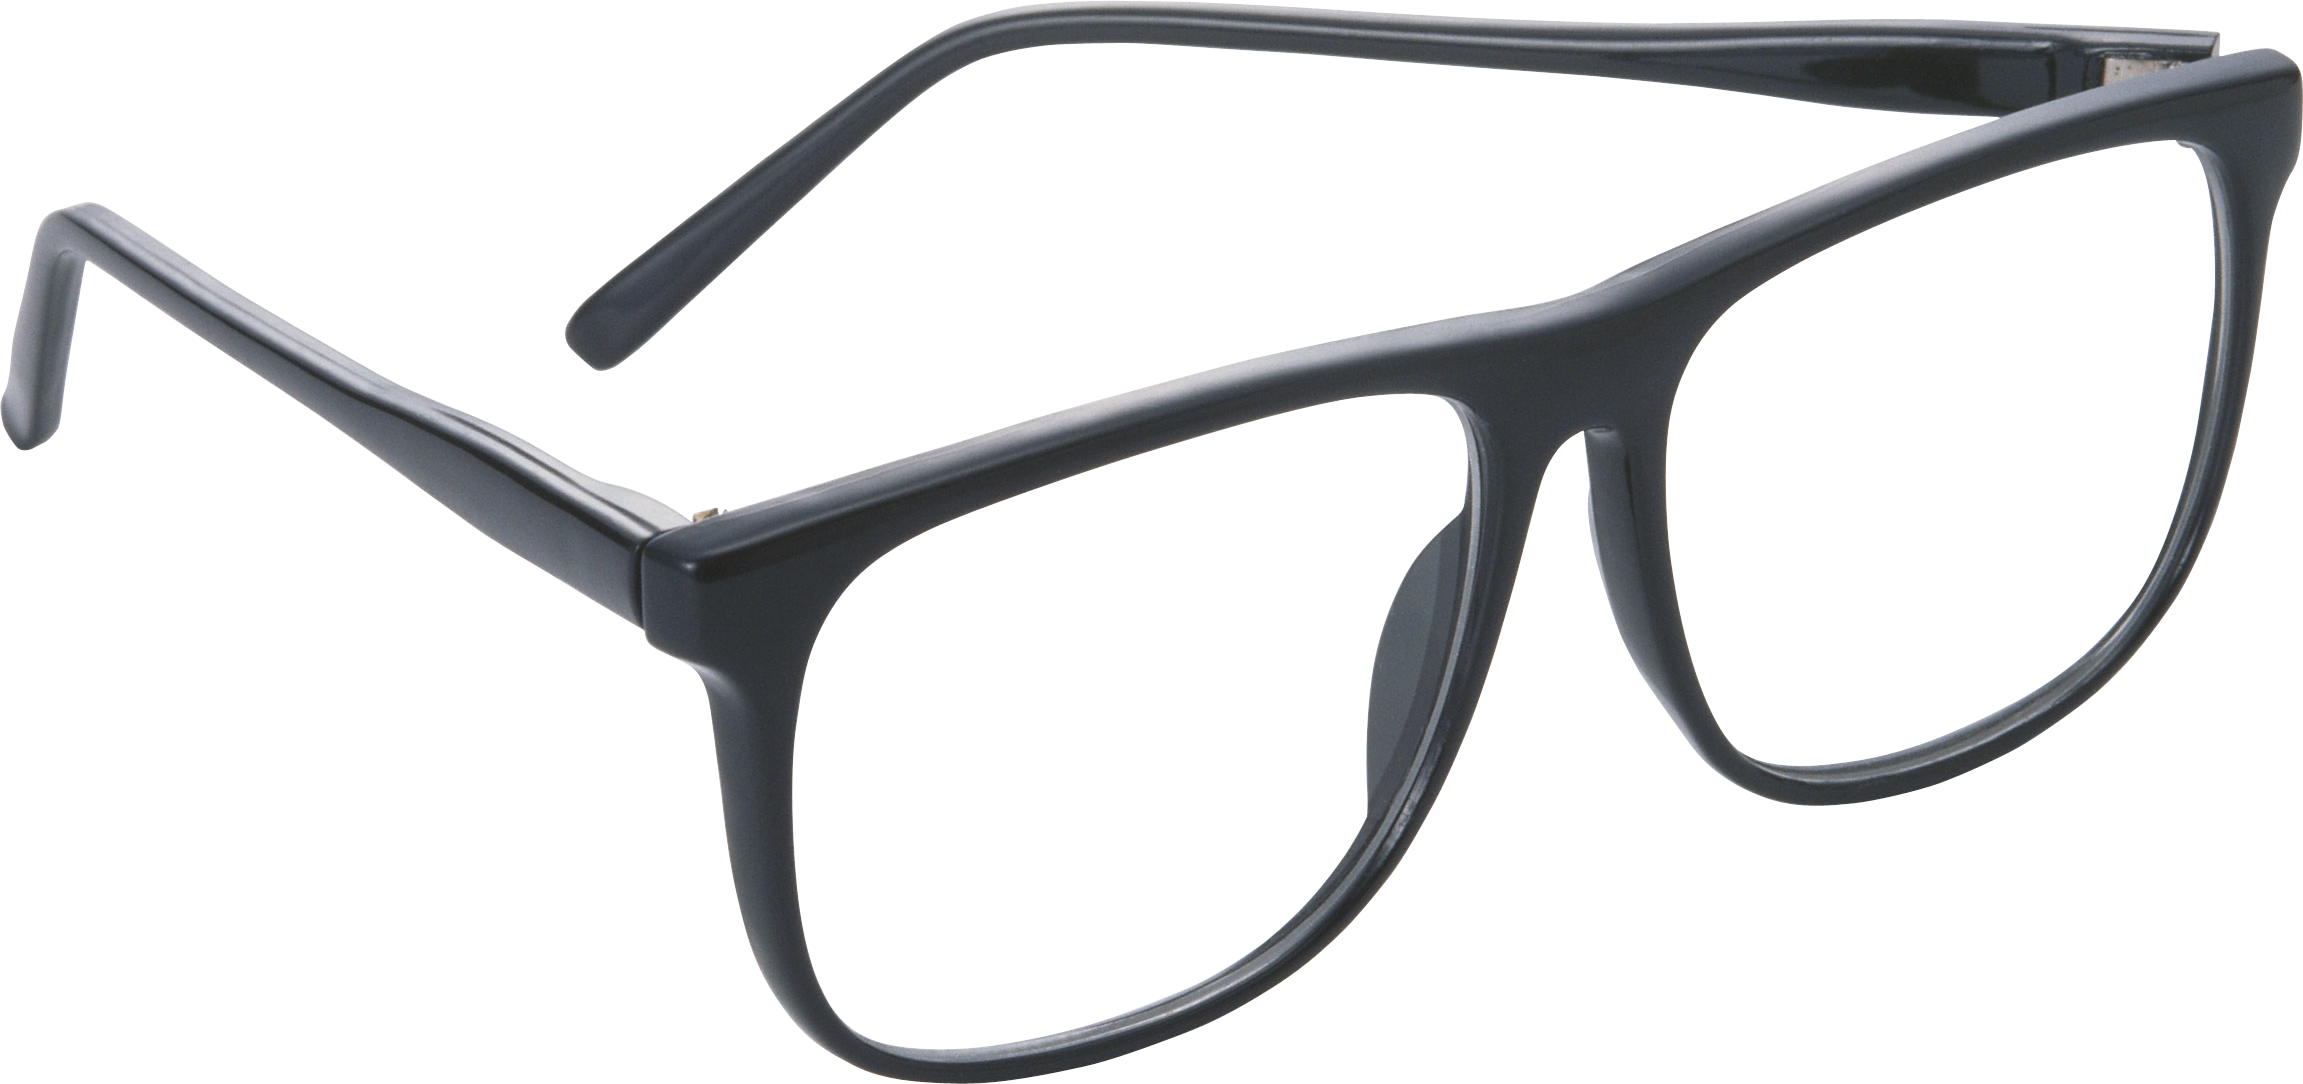 النظارات صورة شفافة